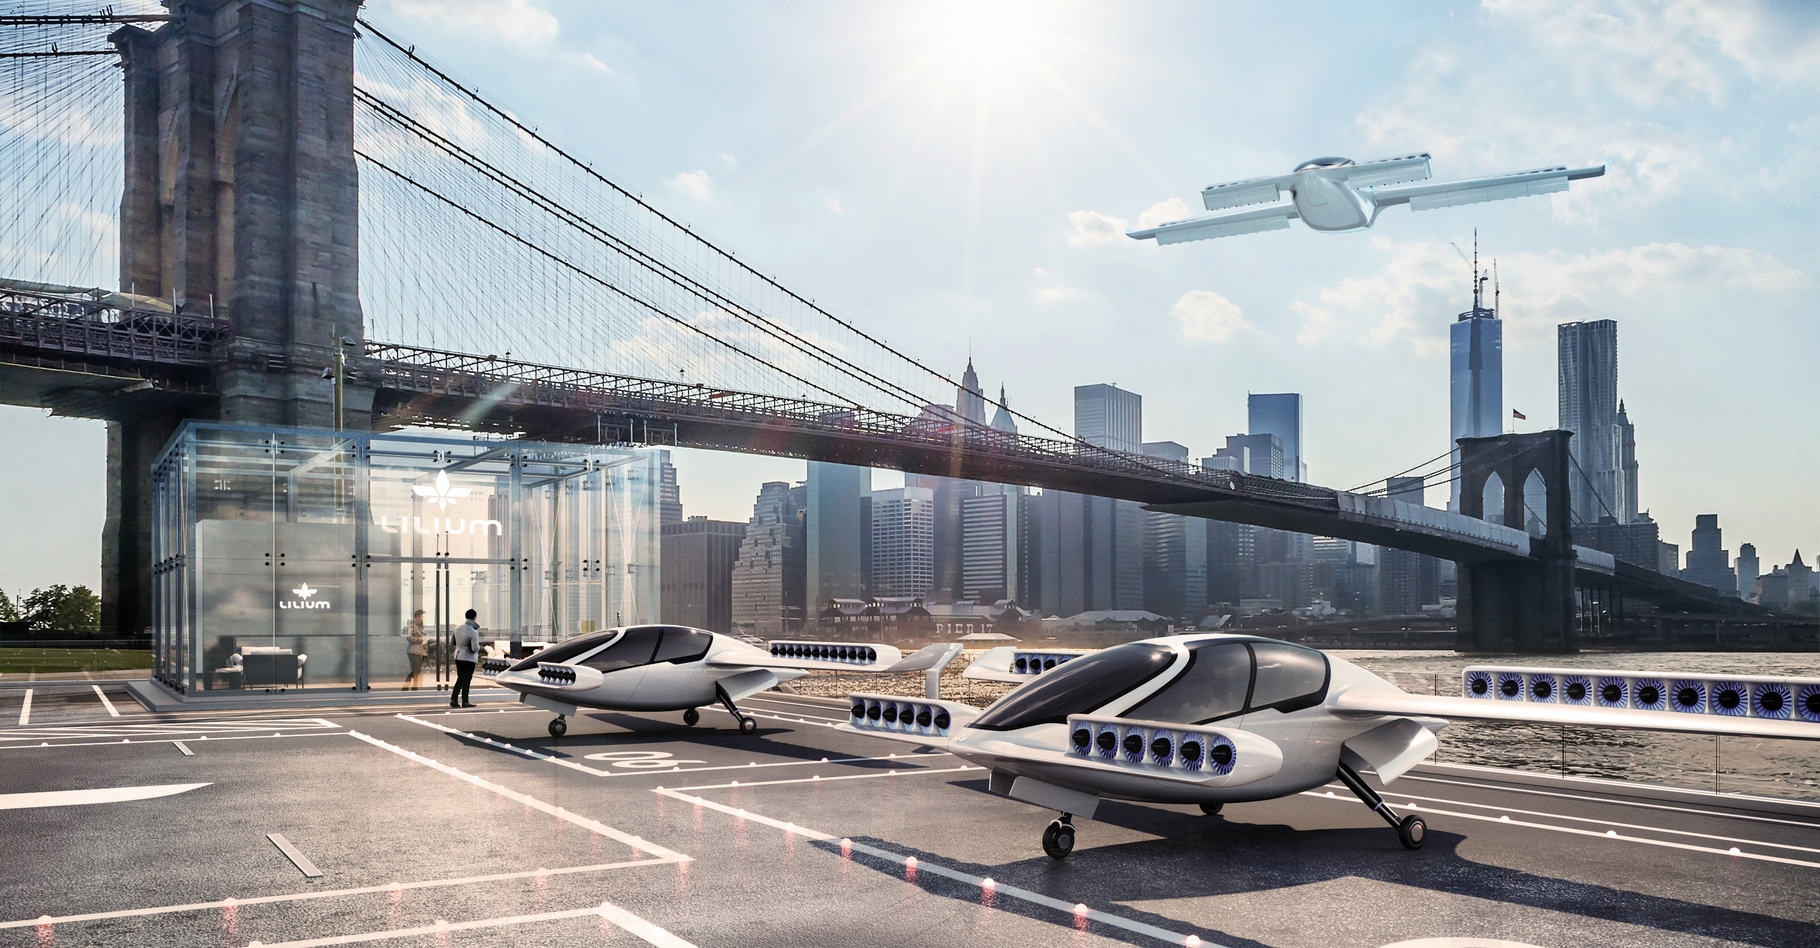 Le concept de l’avion électrique Lilium Jet est de proposer des vols interurbains sur des courtes distances à des tarifs inférieurs à ceux pratiqués actuellement avec des taxis automobiles. © Lilium